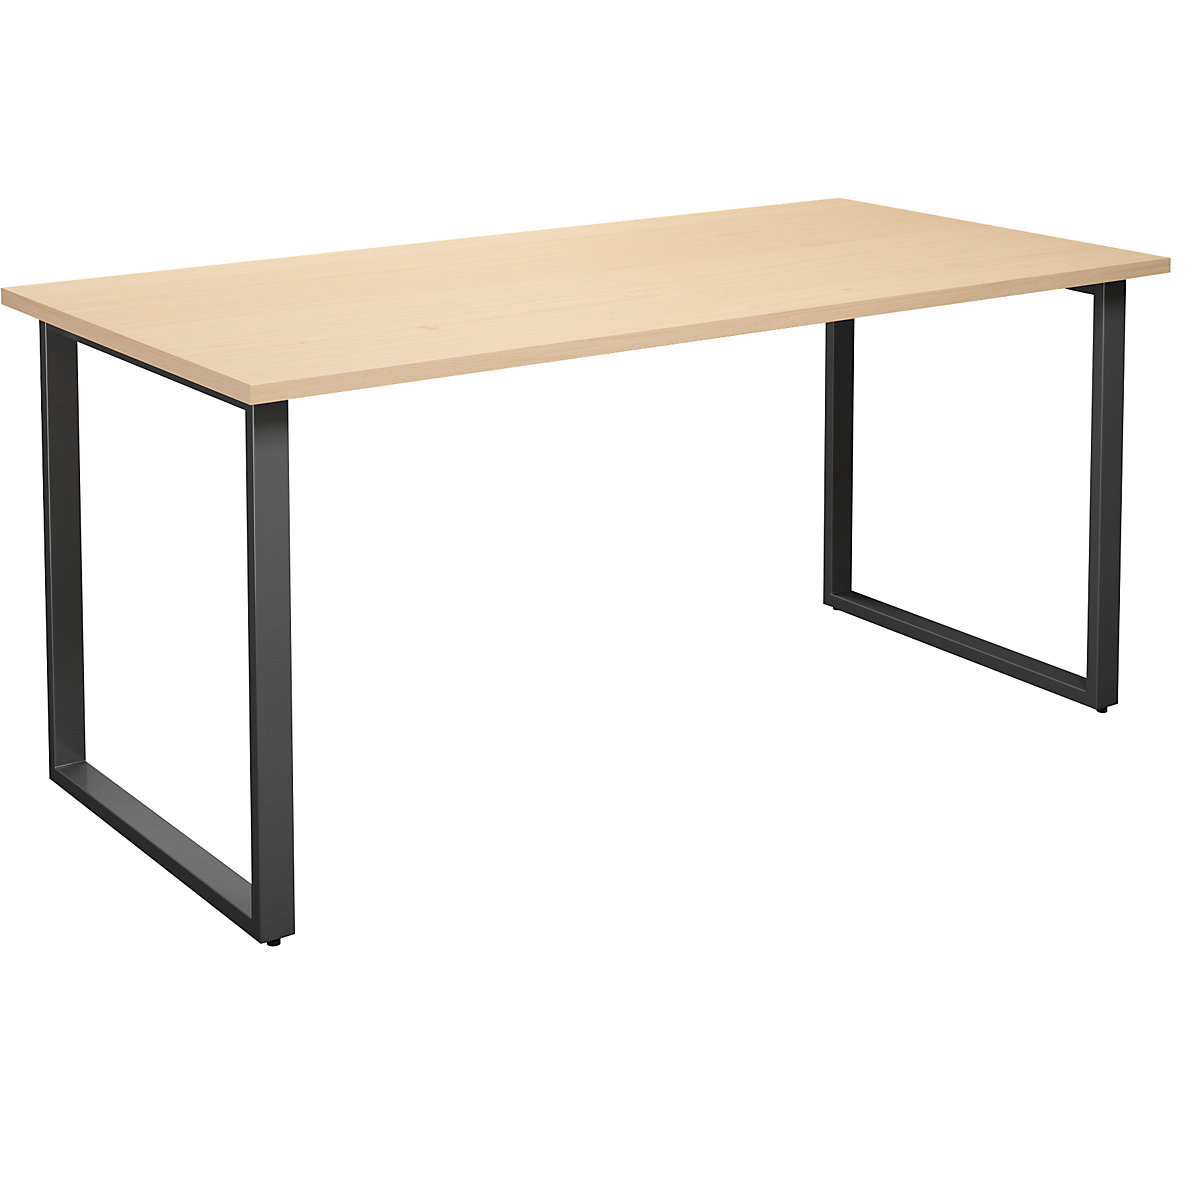 DUO-O multi-purpose desk, straight tabletop, WxD 1600 x 800 mm, birch, black-3